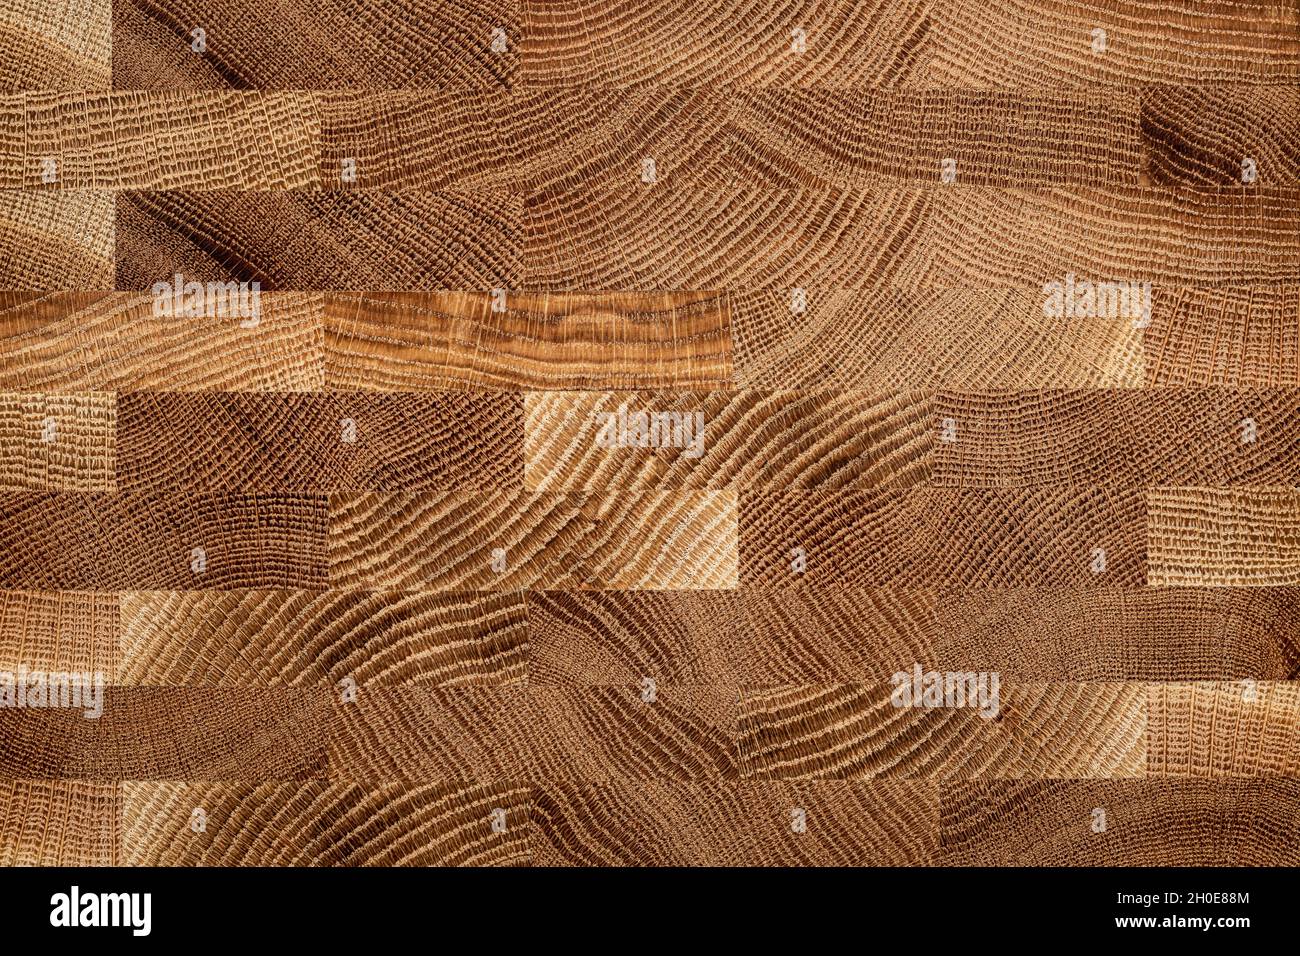 https://c8.alamy.com/comp/2H0E88M/mosaic-texture-of-oak-planks-oak-wood-plank-natural-texture-background-2H0E88M.jpg